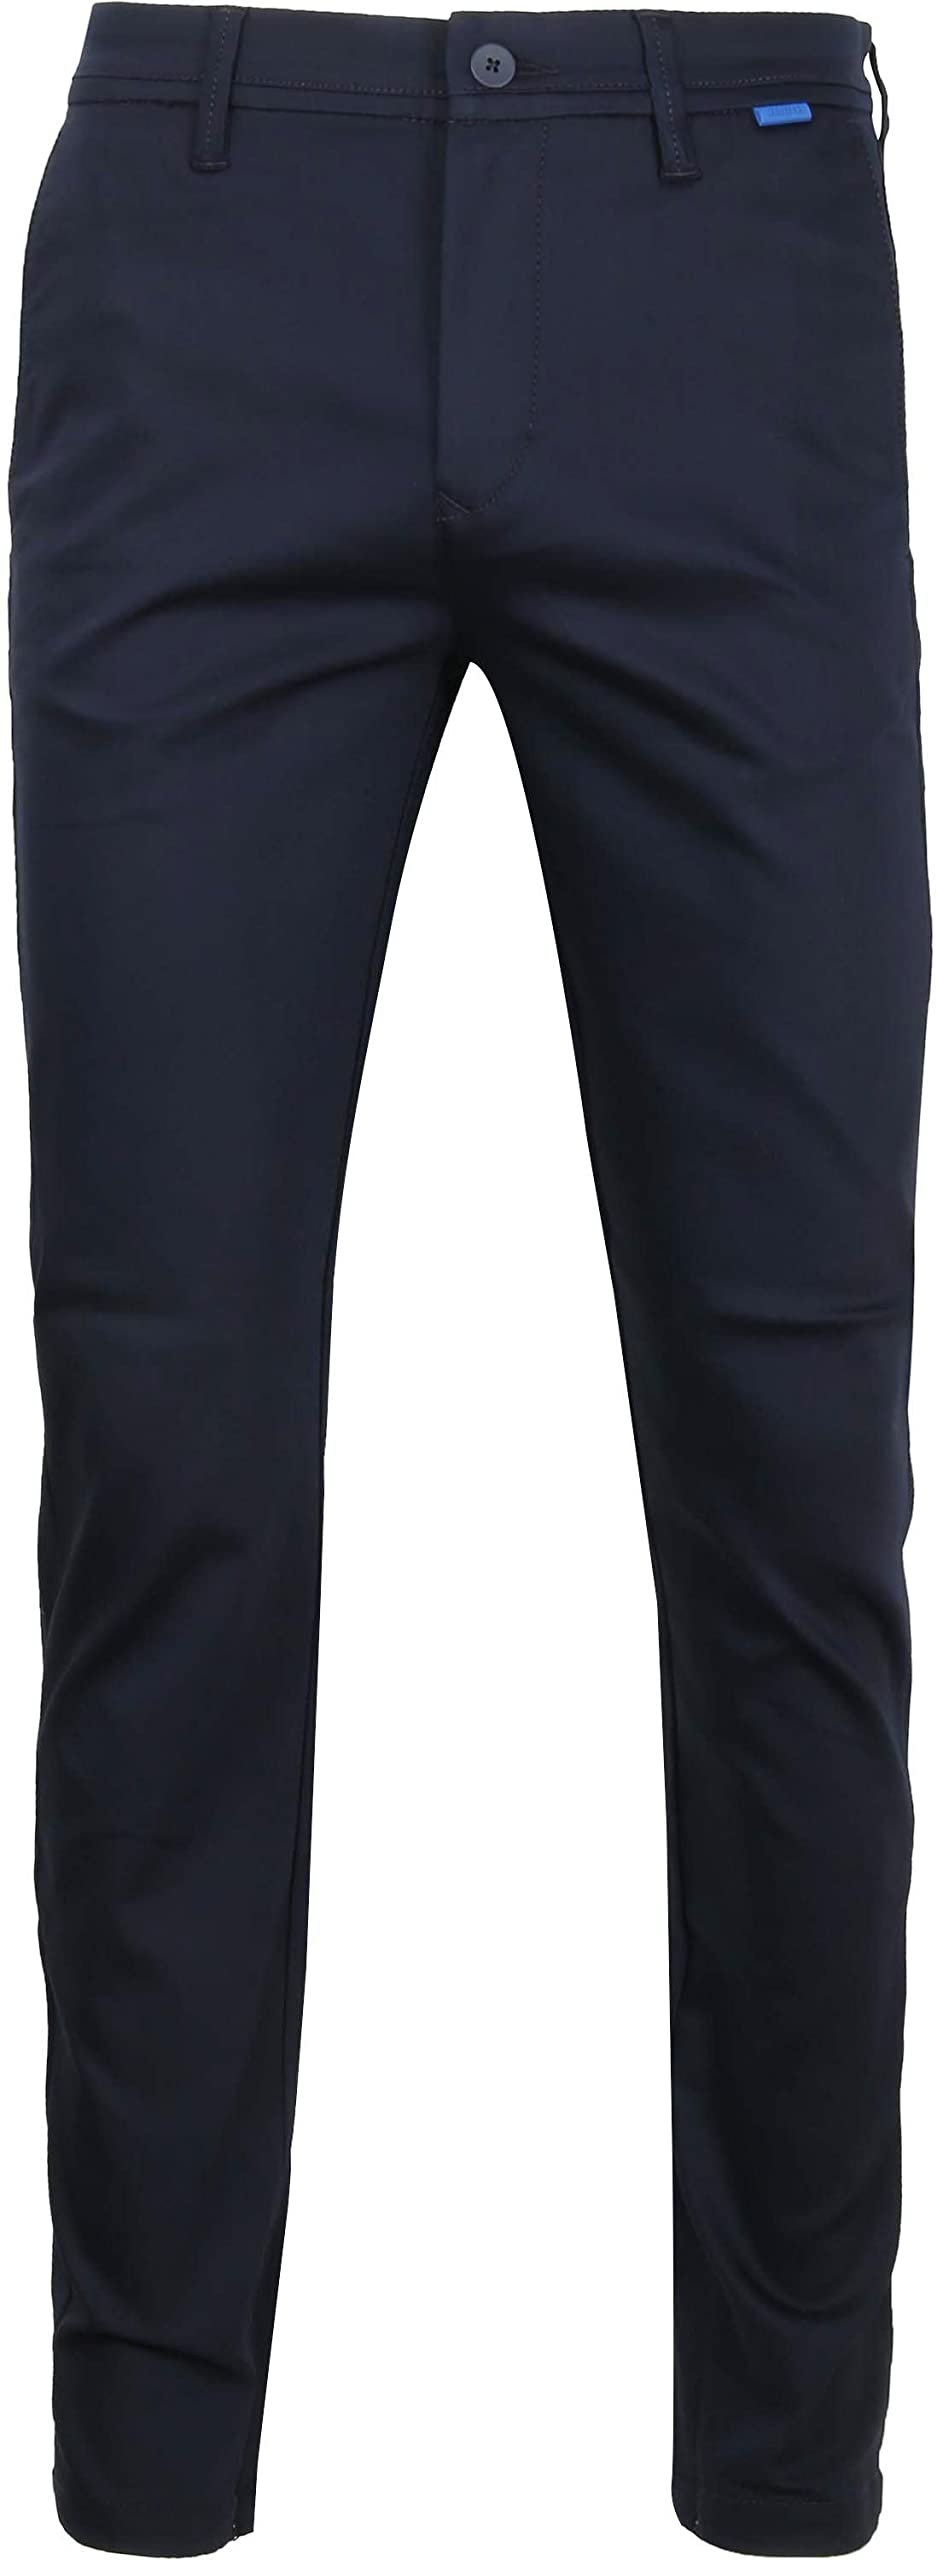 MAC Jeans Herren Griffin, per Pack blautöne (Nautic Blue 196), W28/L28 (Herstellergröße: 28/28)